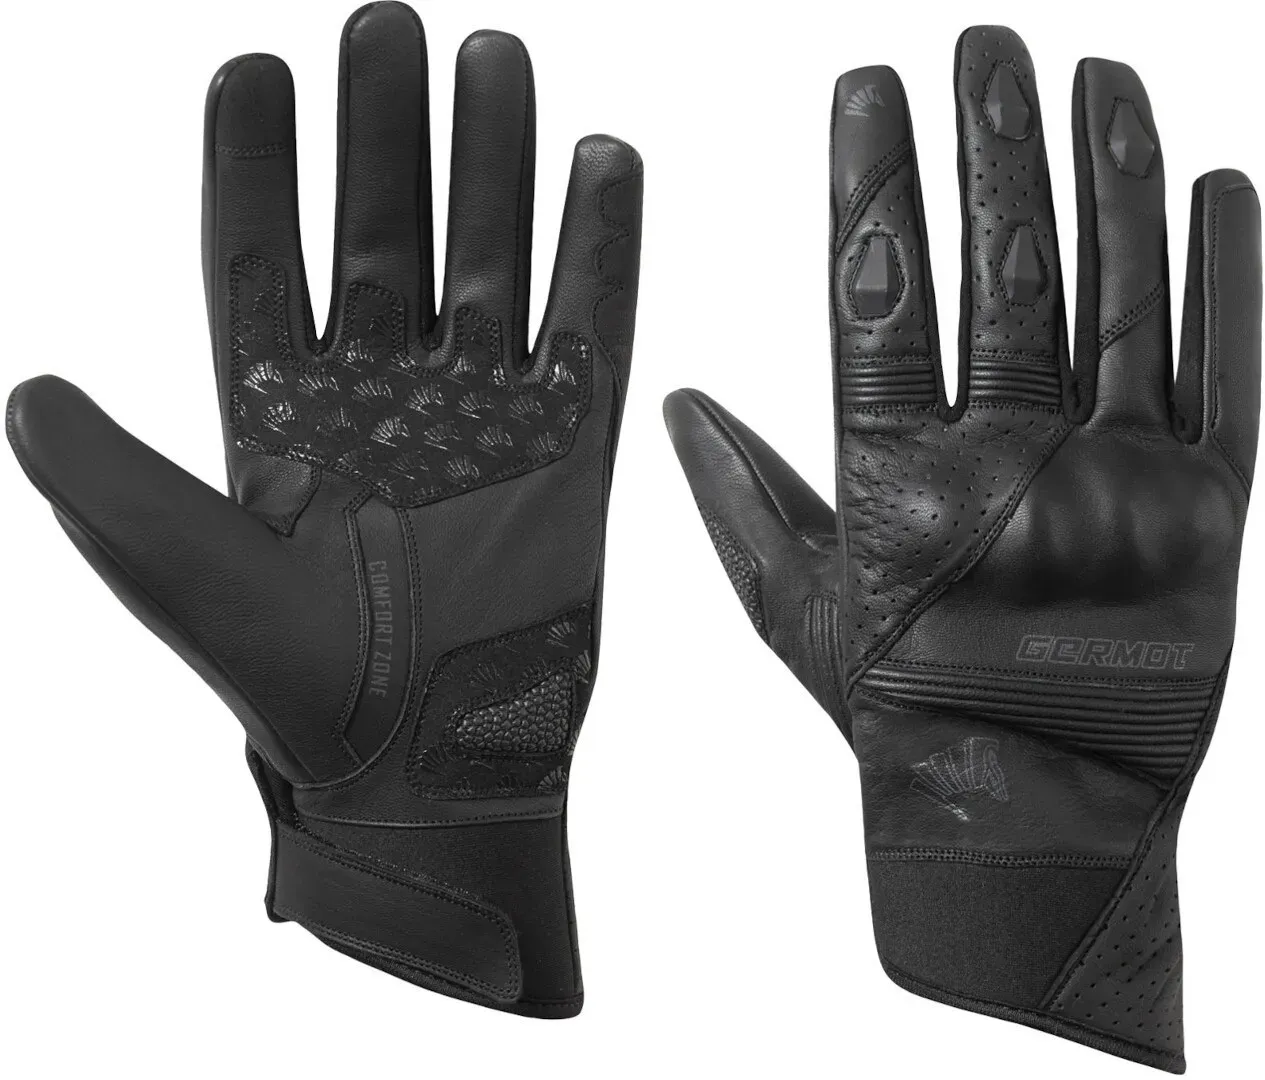 Germot Thompson Motorfiets handschoenen, zwart, S